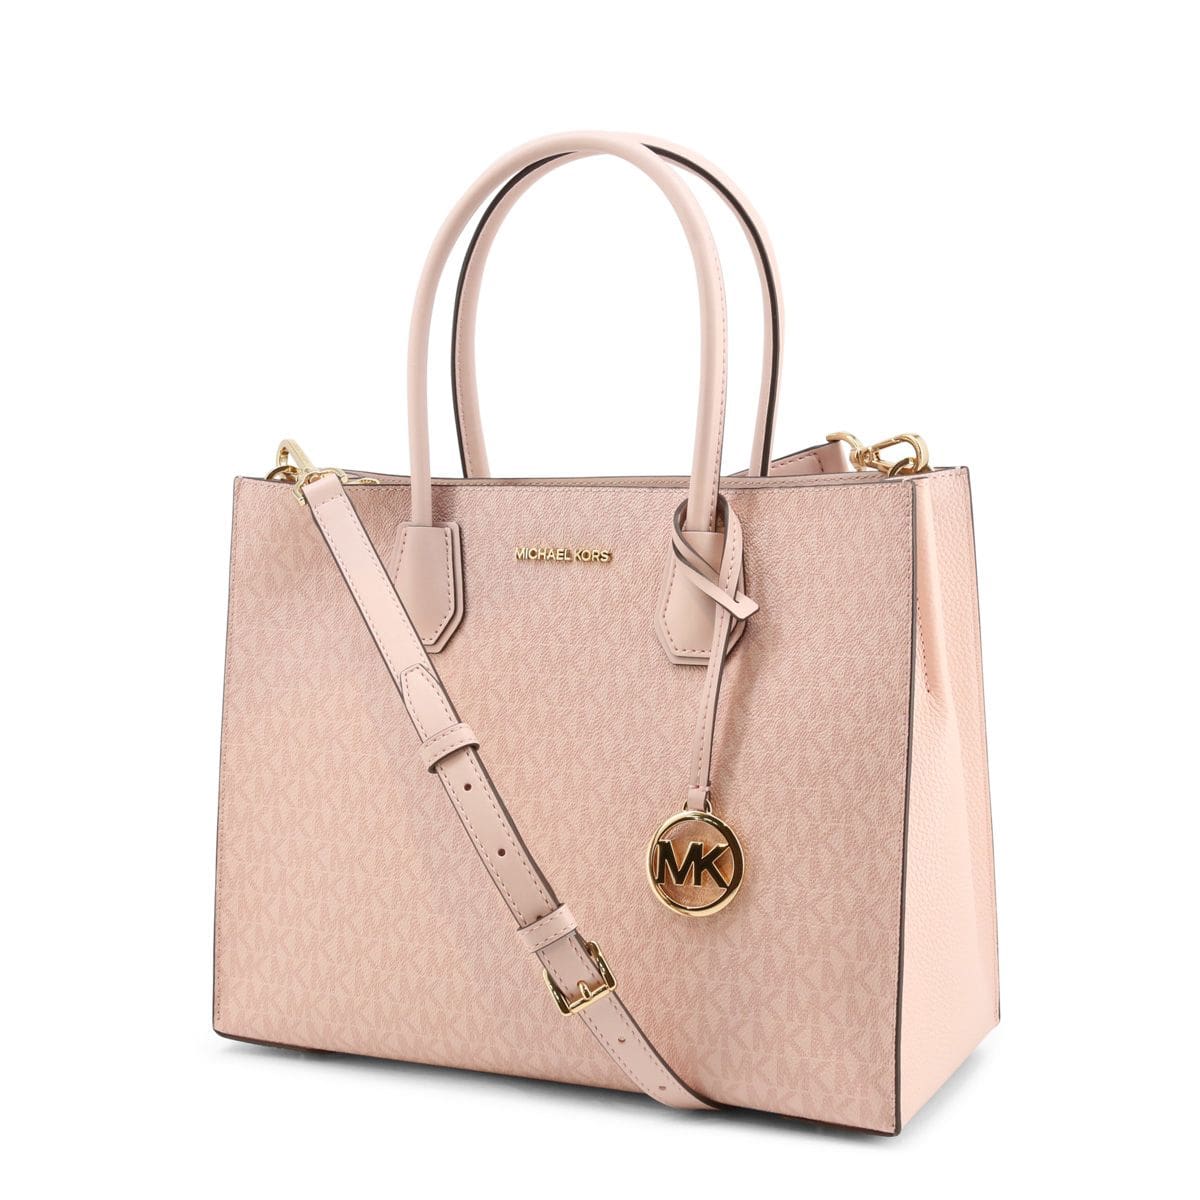 Michael Kors Pink Top Handle Bag - Mercer_35T2Gm9S3B 1